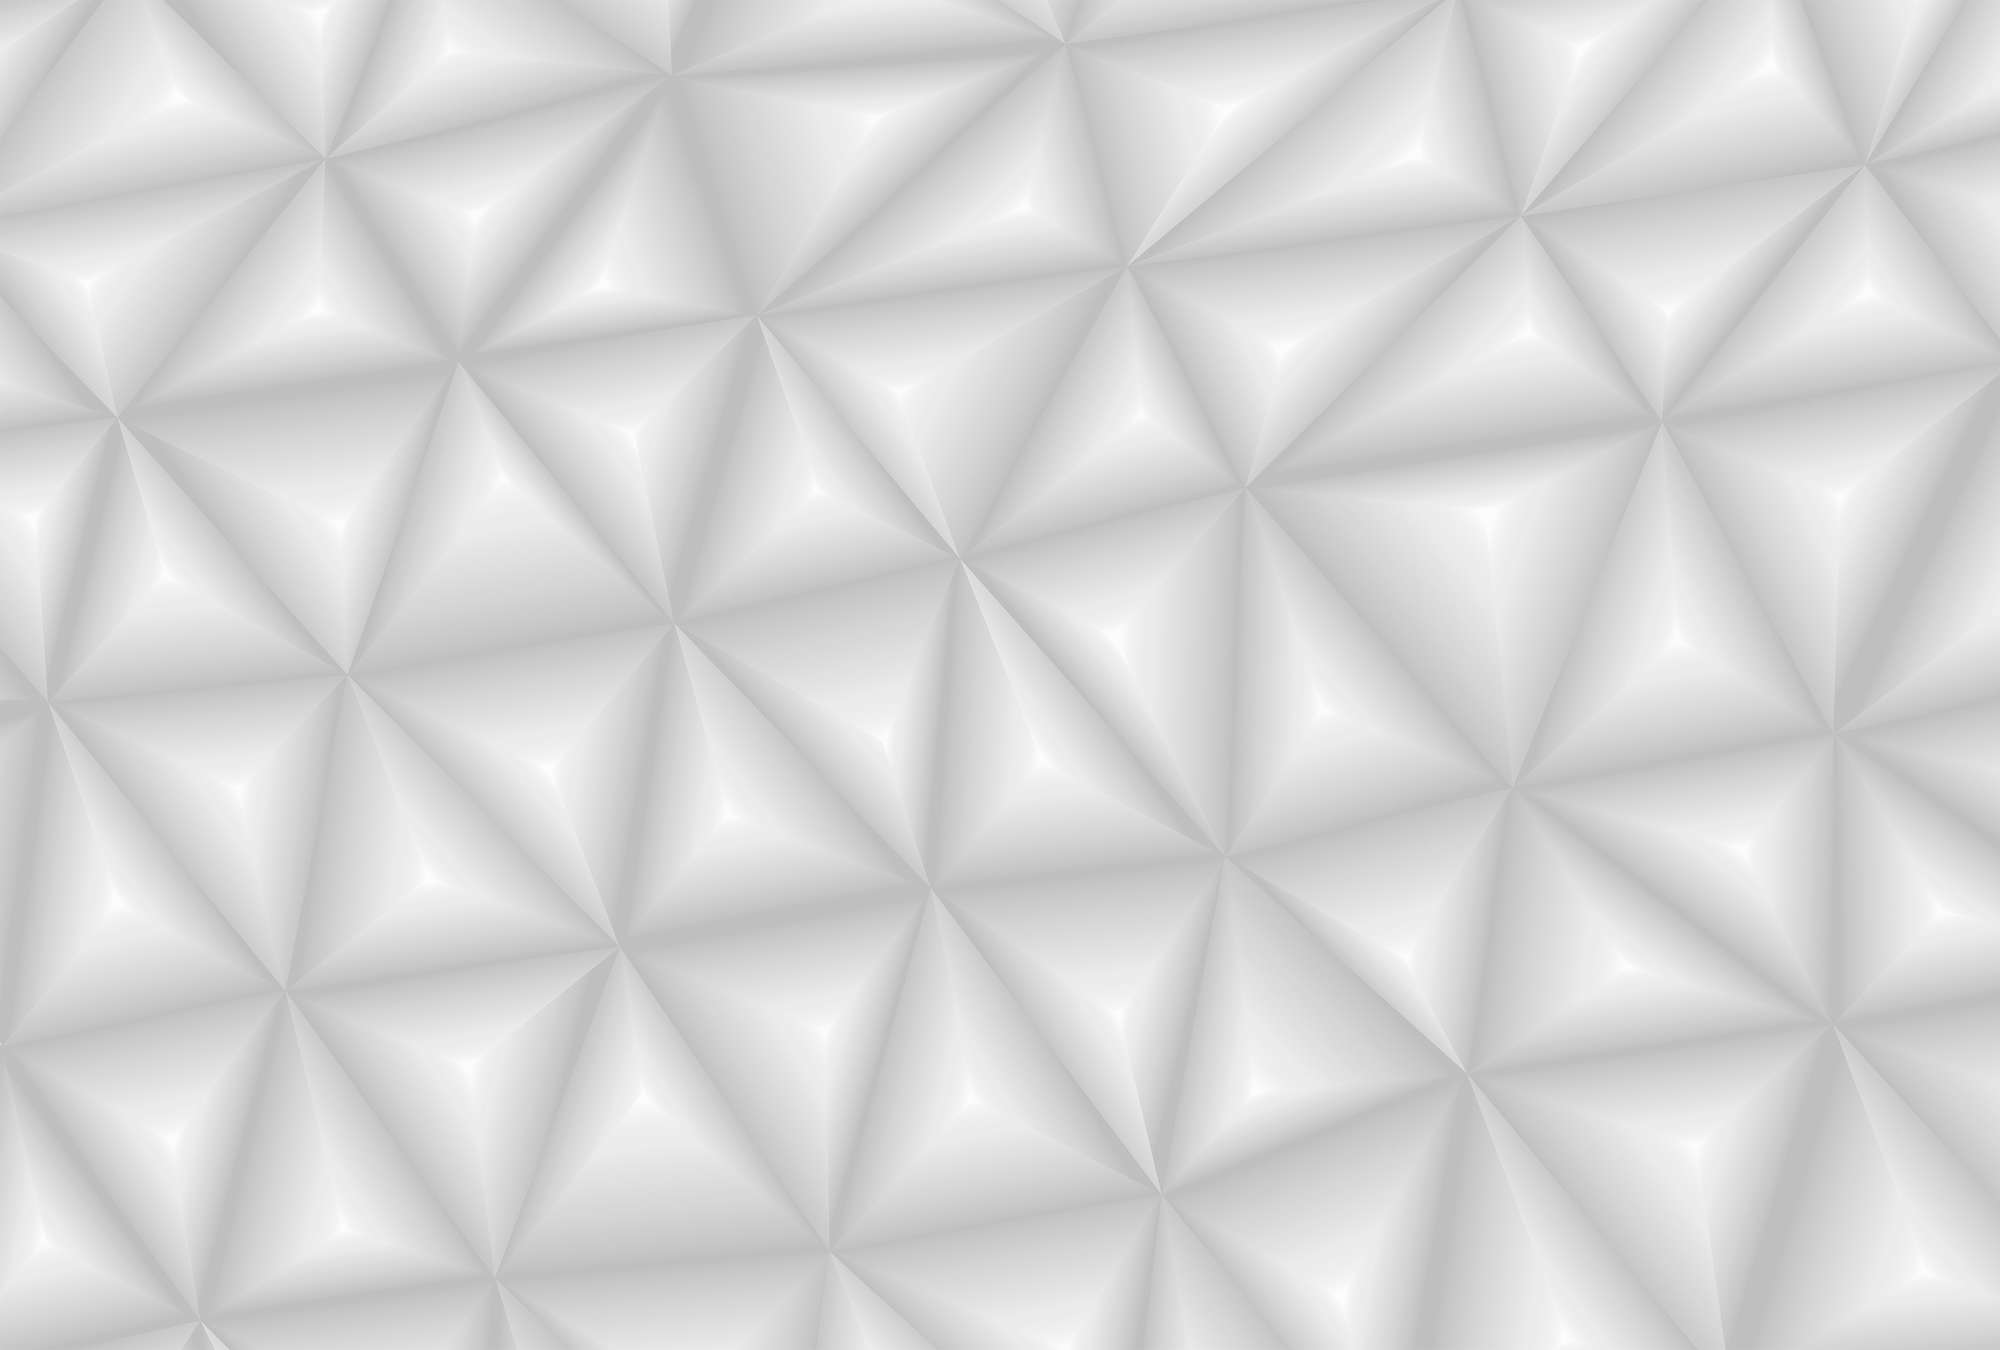             3D Behang Grijs met Grafisch Driehoek Patroon
        